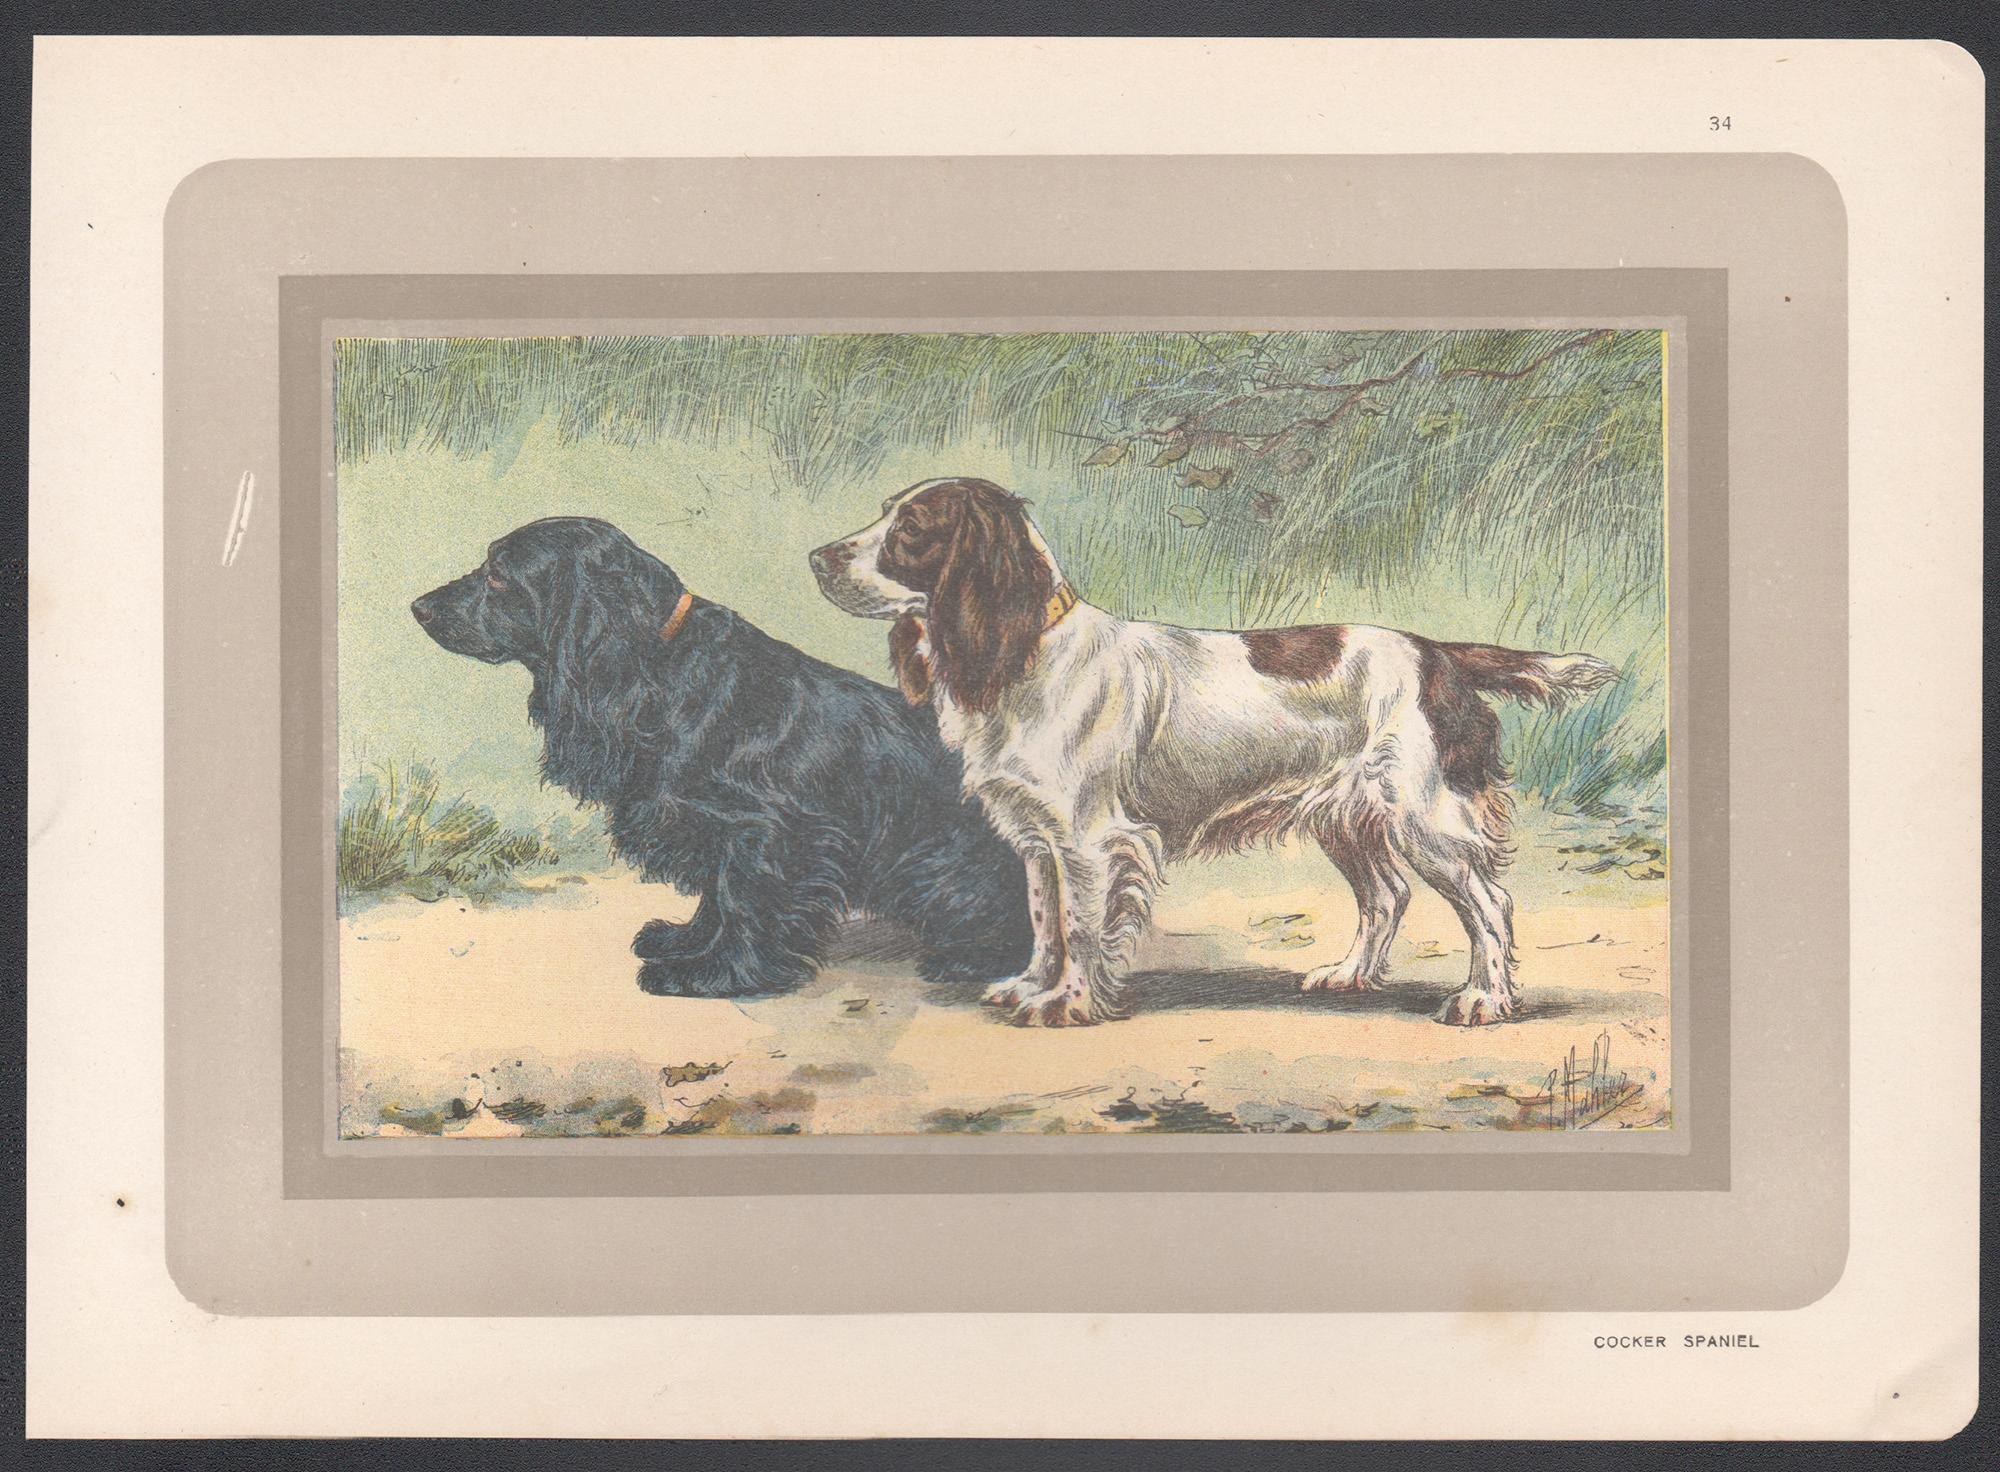 Cocker Spaniel, impression chromolithographie d'un chien de chasse français, 1931 - Print de P. Mahler